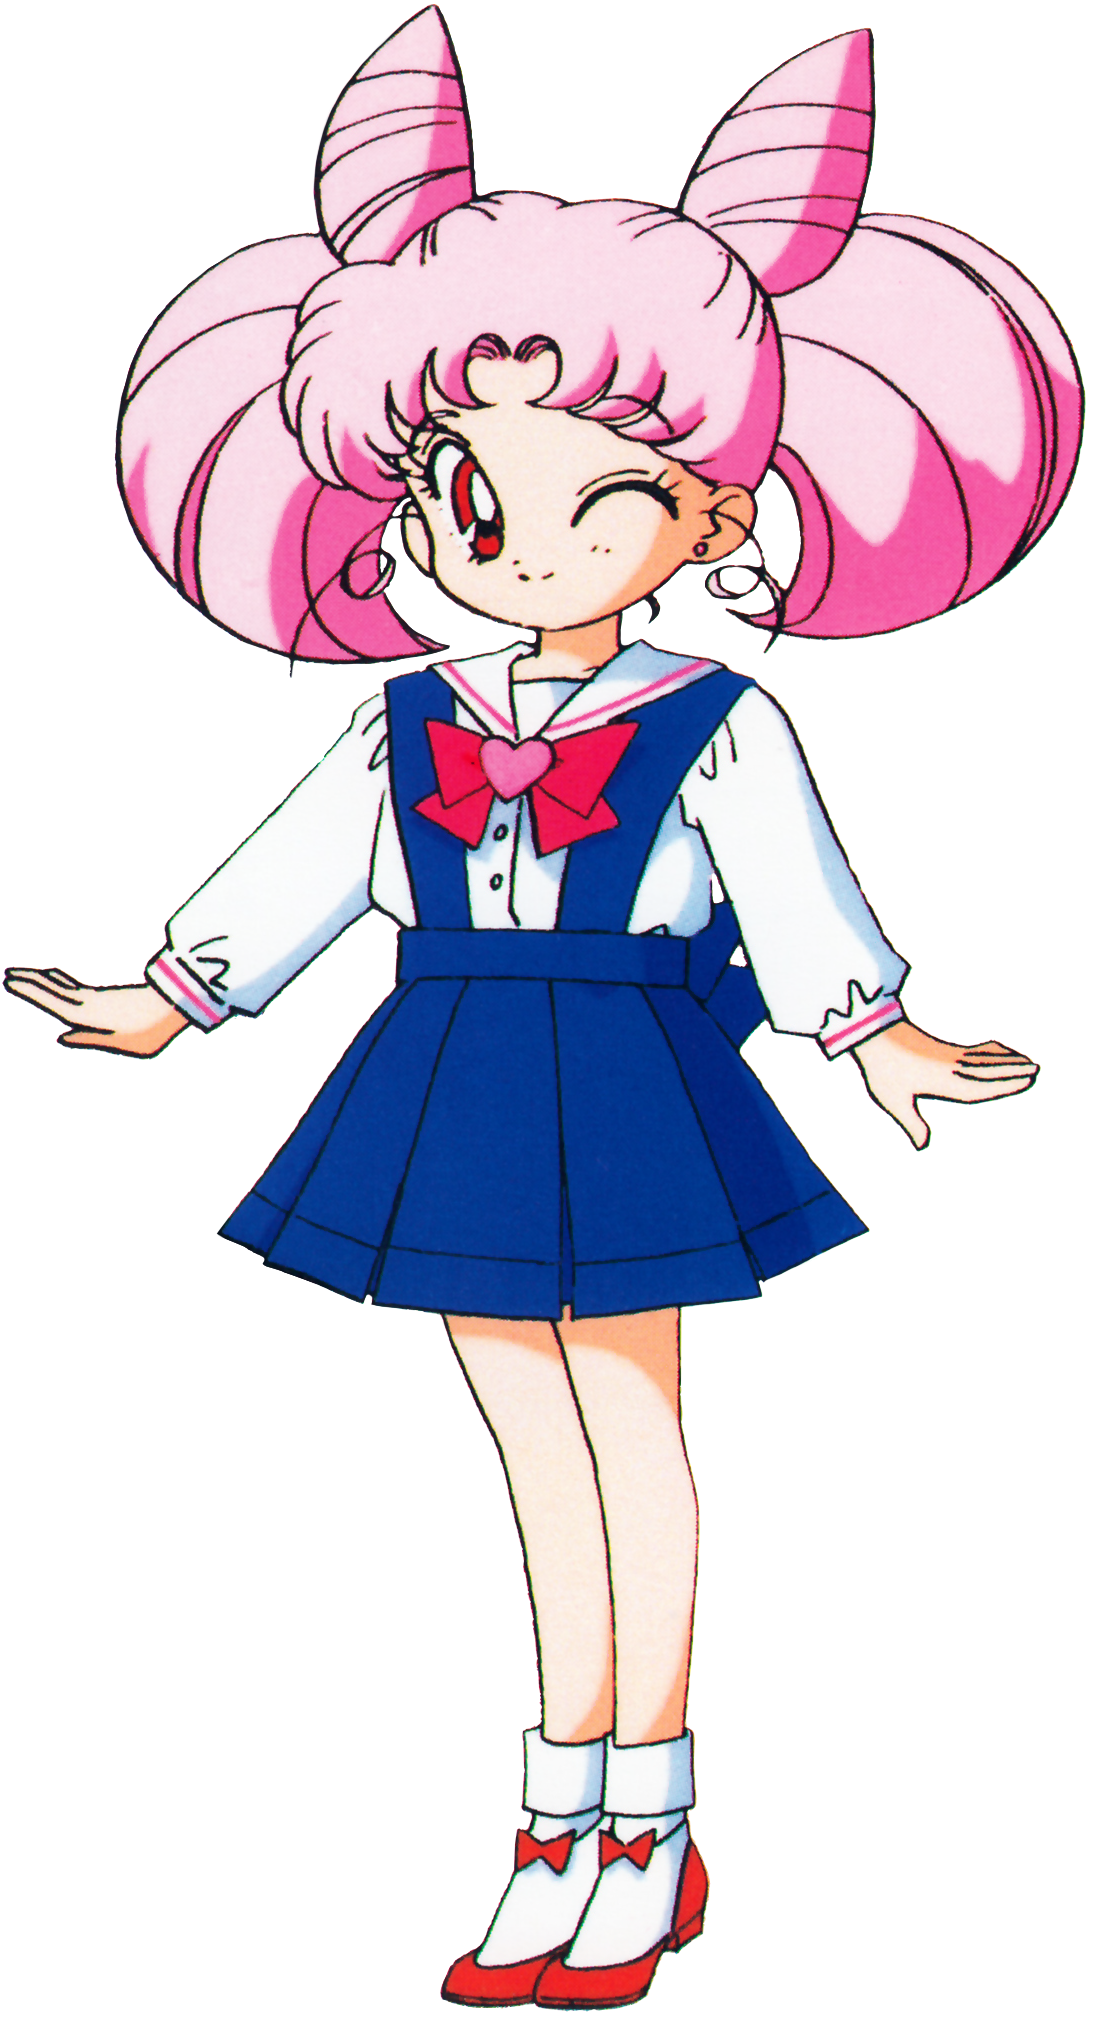 Chibi Usa: Chào mừng đến với thế giới Chibi Usa tươi sáng, một nhân vật đáng yêu và đầy năng lượng trong Sailor Moon! Từ bộ anime, manga cho đến sản phẩm liên quan khác, hãy cùng khám phá tất cả những gì liên quan đến Chibi Usa, một cô bé có thể khiến trái tim bạn tan chảy với nét đáng yêu của mình!